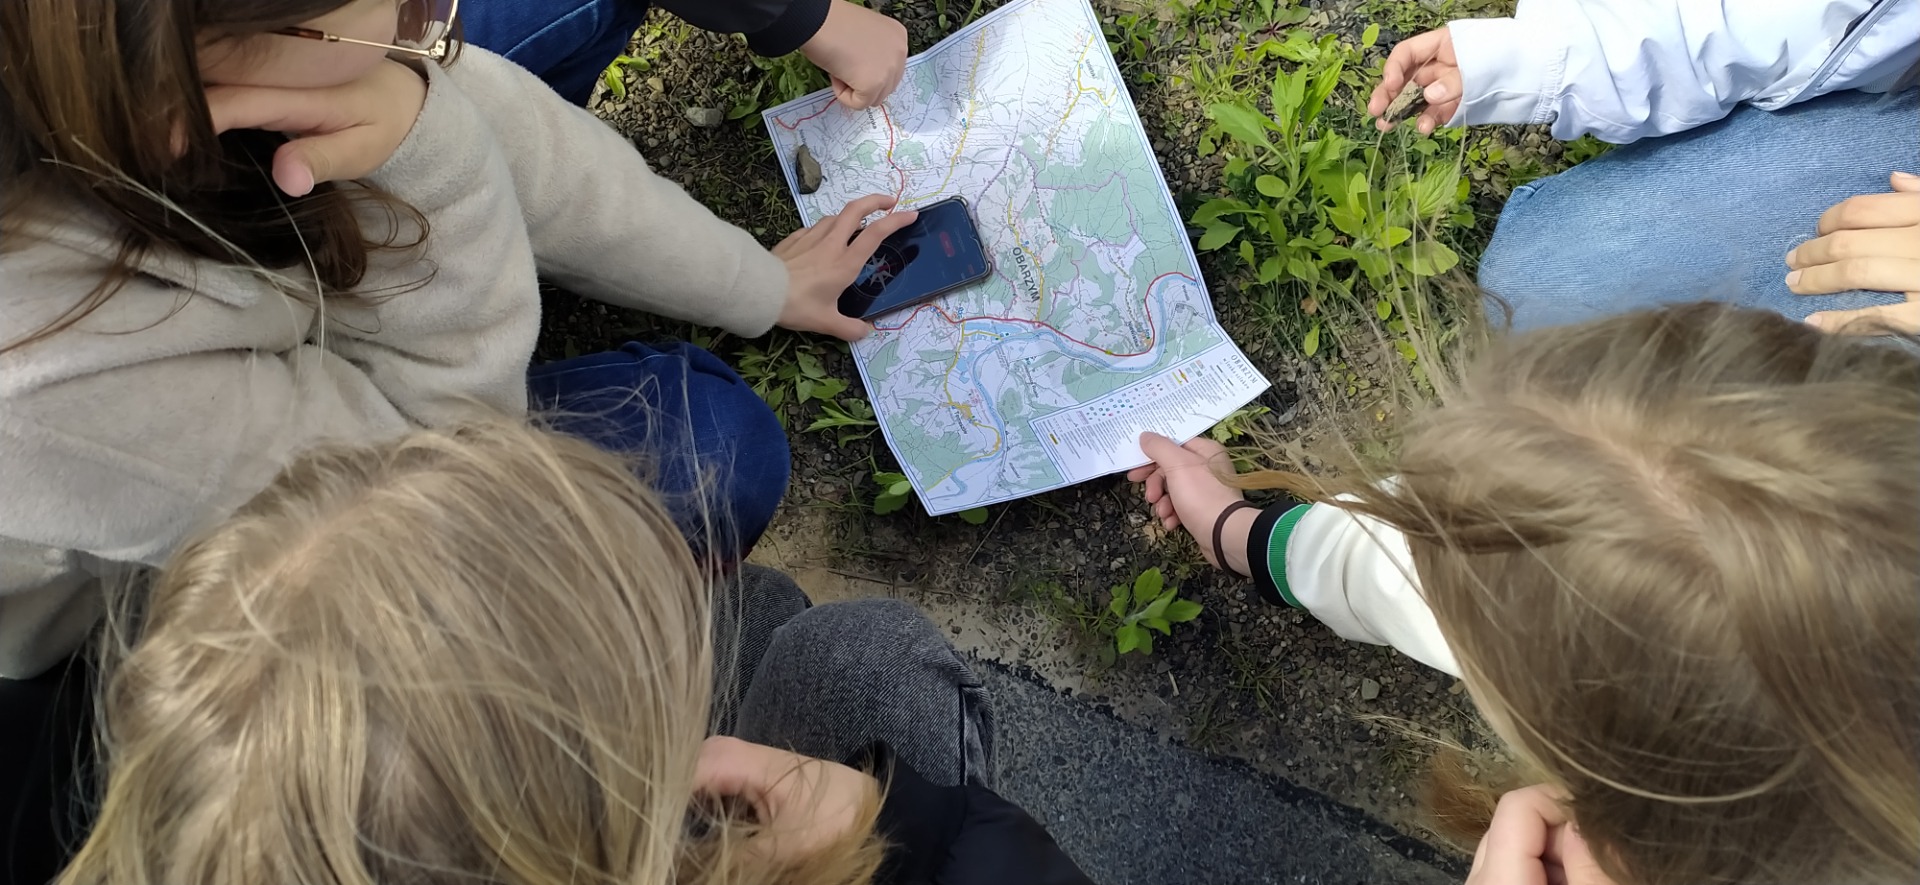 Na fotografii widać leżącą rozłożoną na trawie mapę gminy Dydnia, uczennica trzyma telefon z aplikacją kompasu.